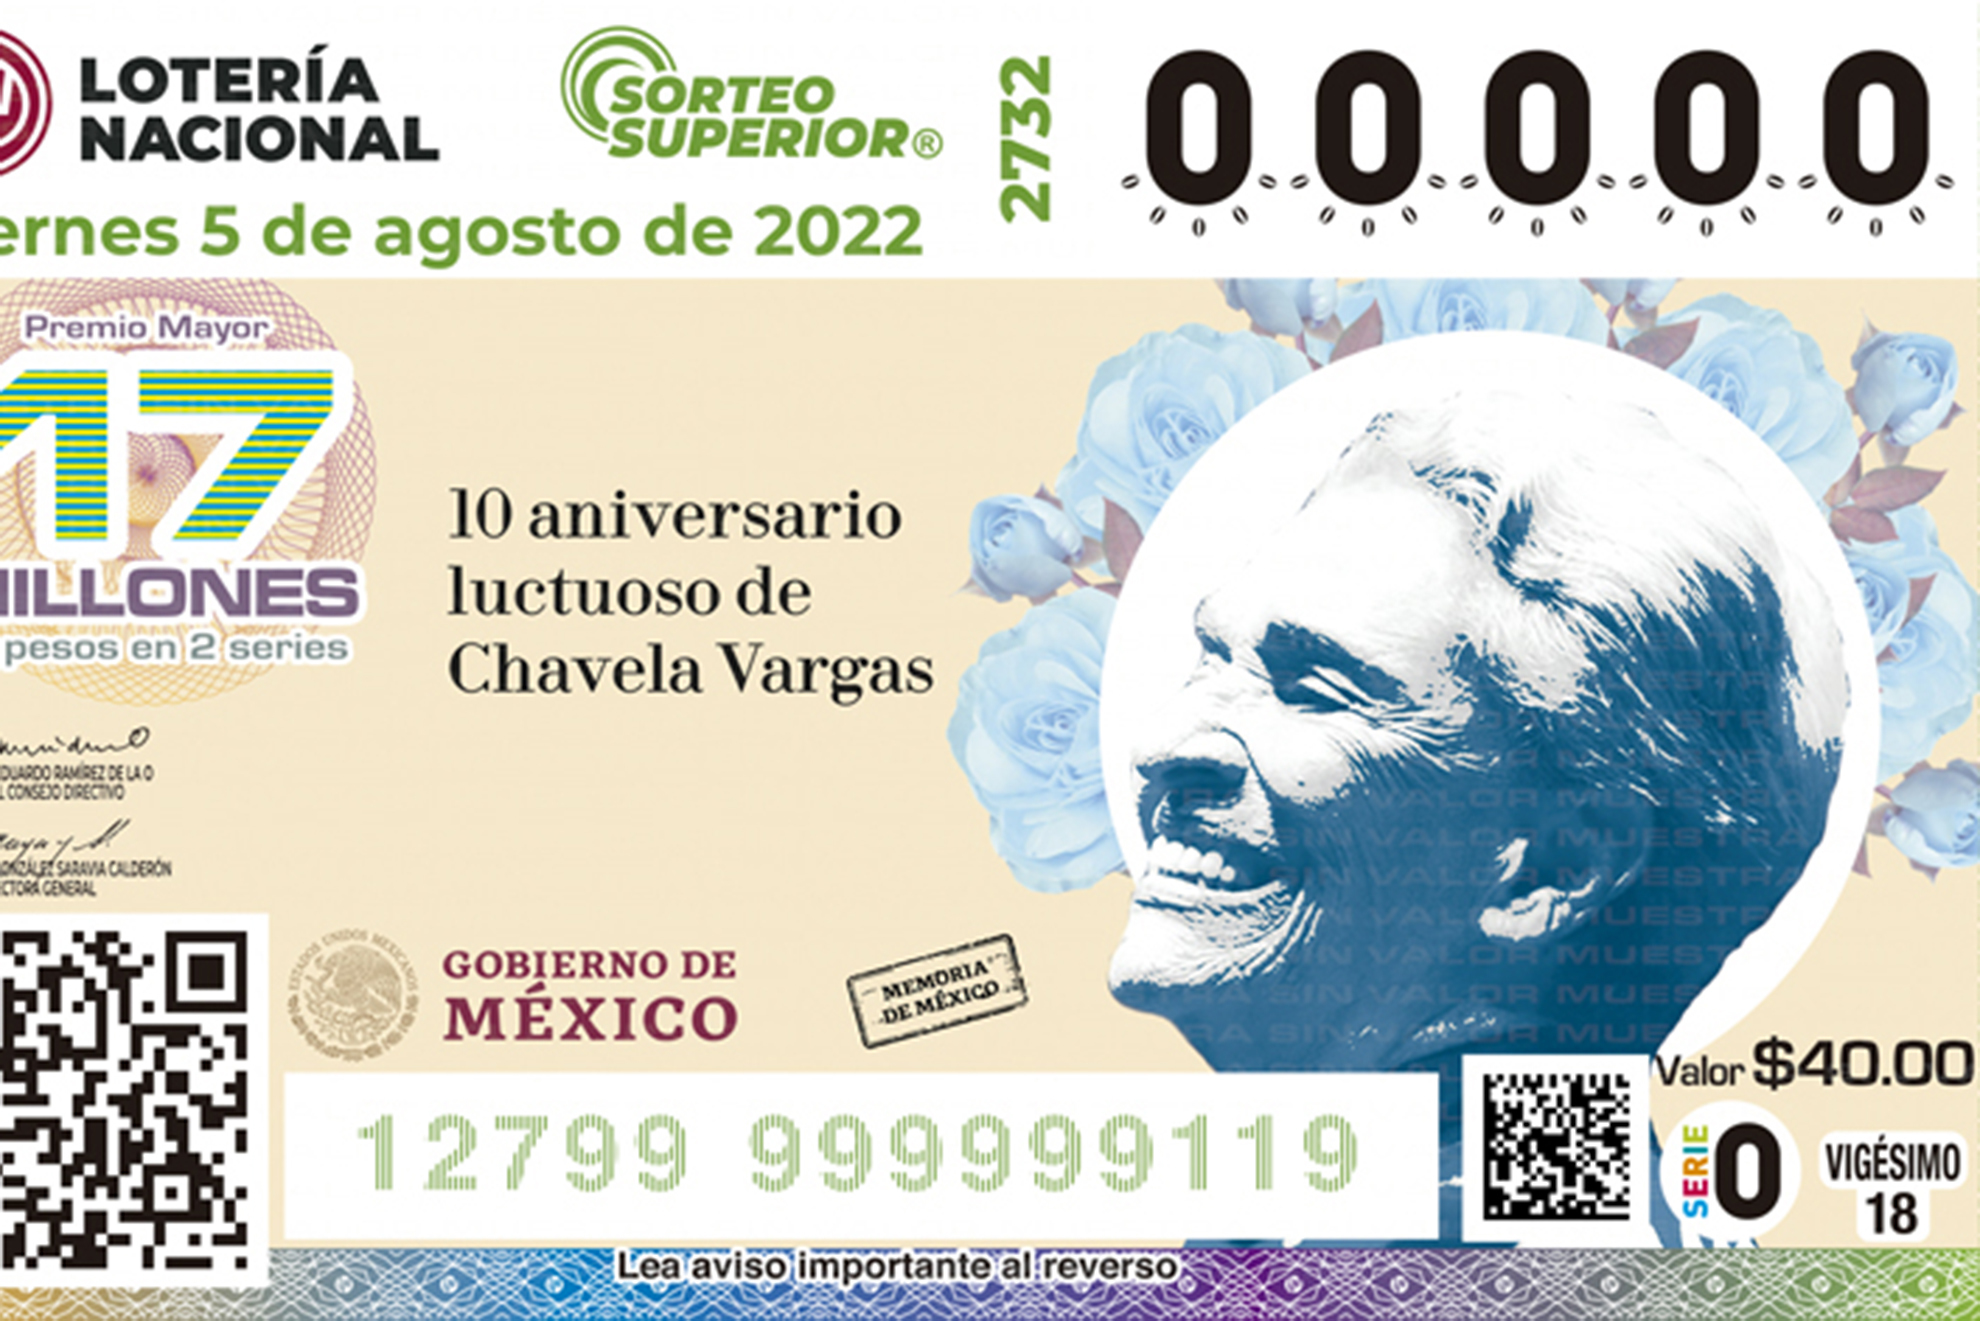 Resultados Lotería Nacional y premios de los sorteos hoy 5 de agoto de 2022 en México.